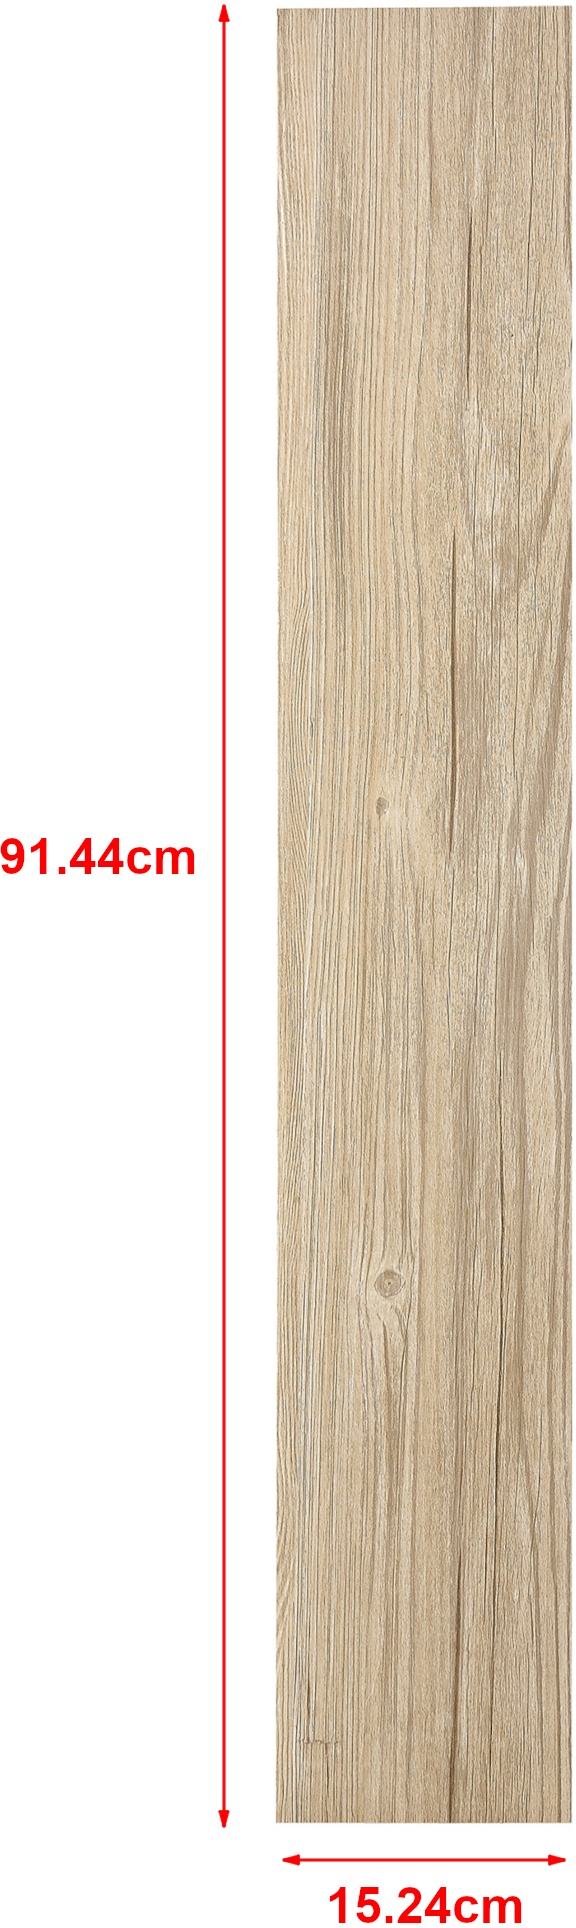 NEU.HOLZ Vinyl Laminat Vanola selbstklebend 5,85m2 Italian Oak